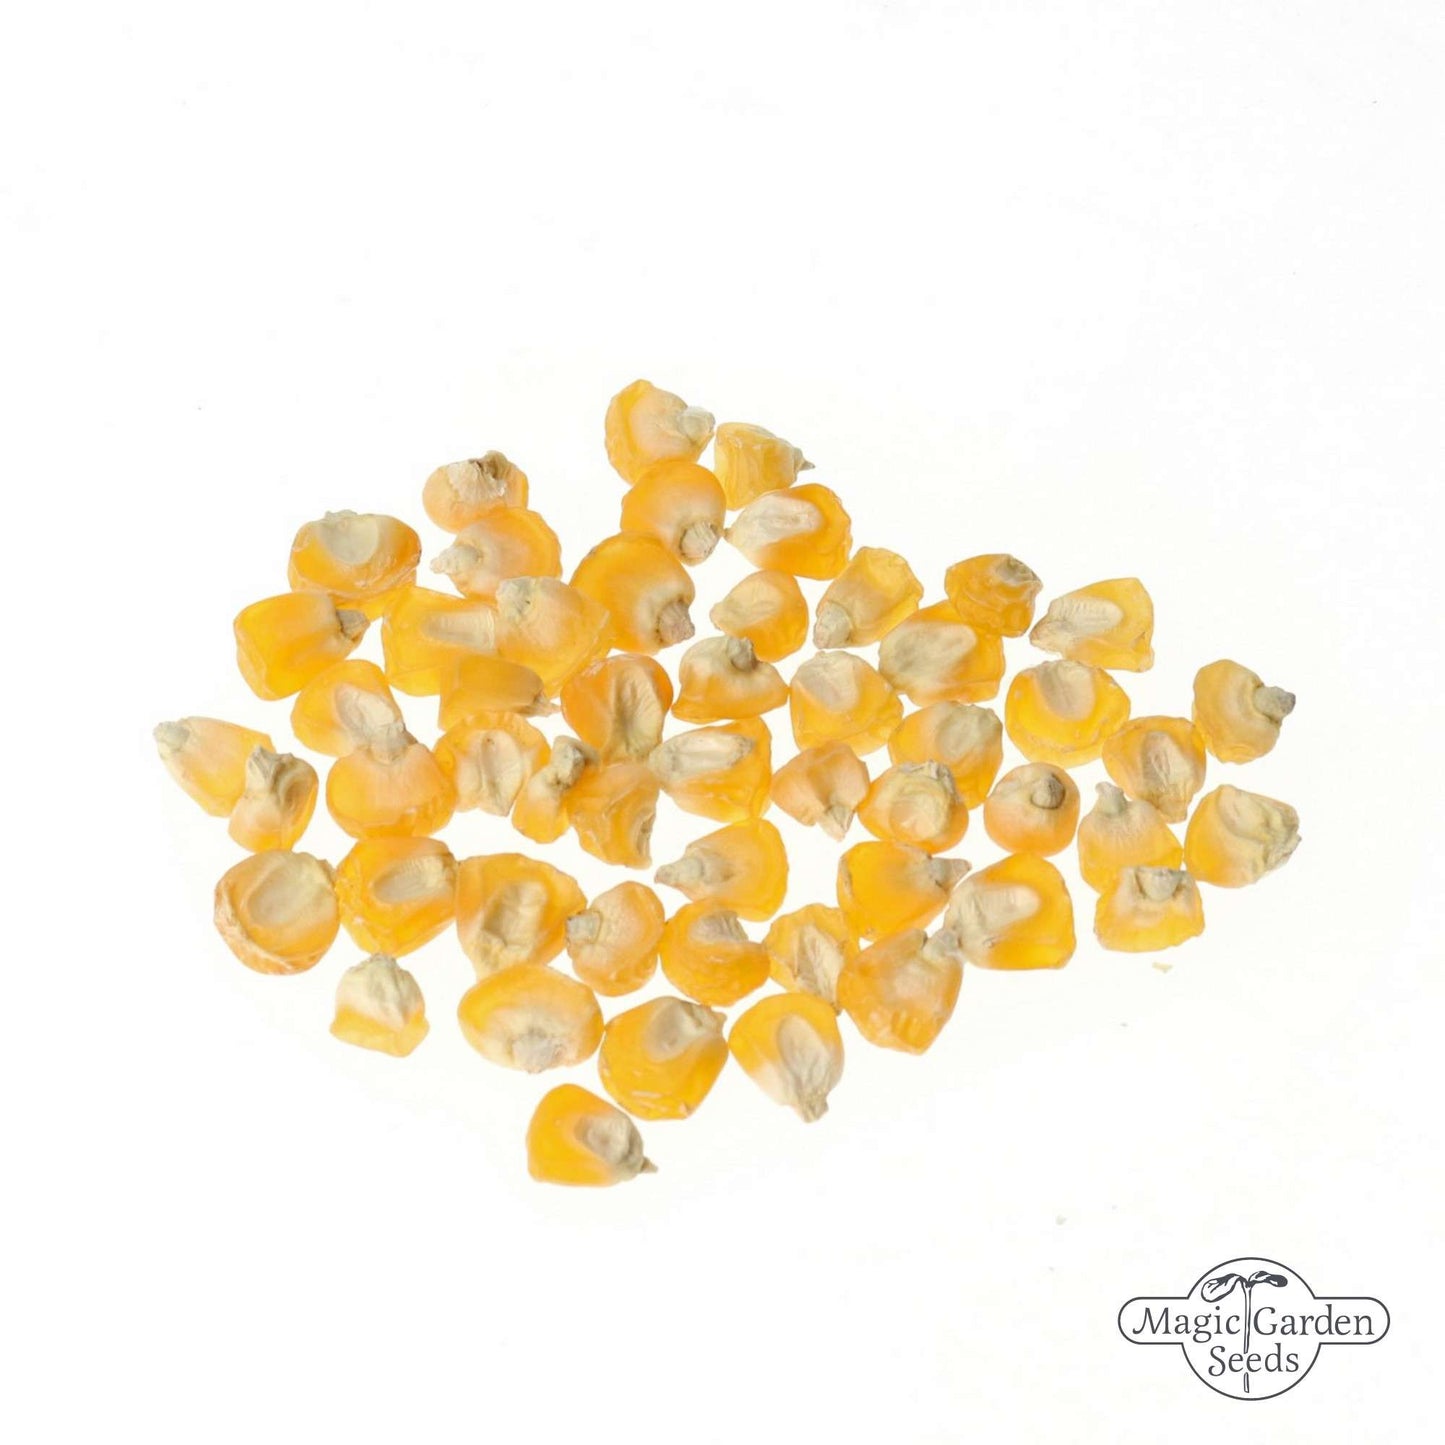 Suikermais 'Golden Bantam' zaden Biologisch *Kleine verpakking*